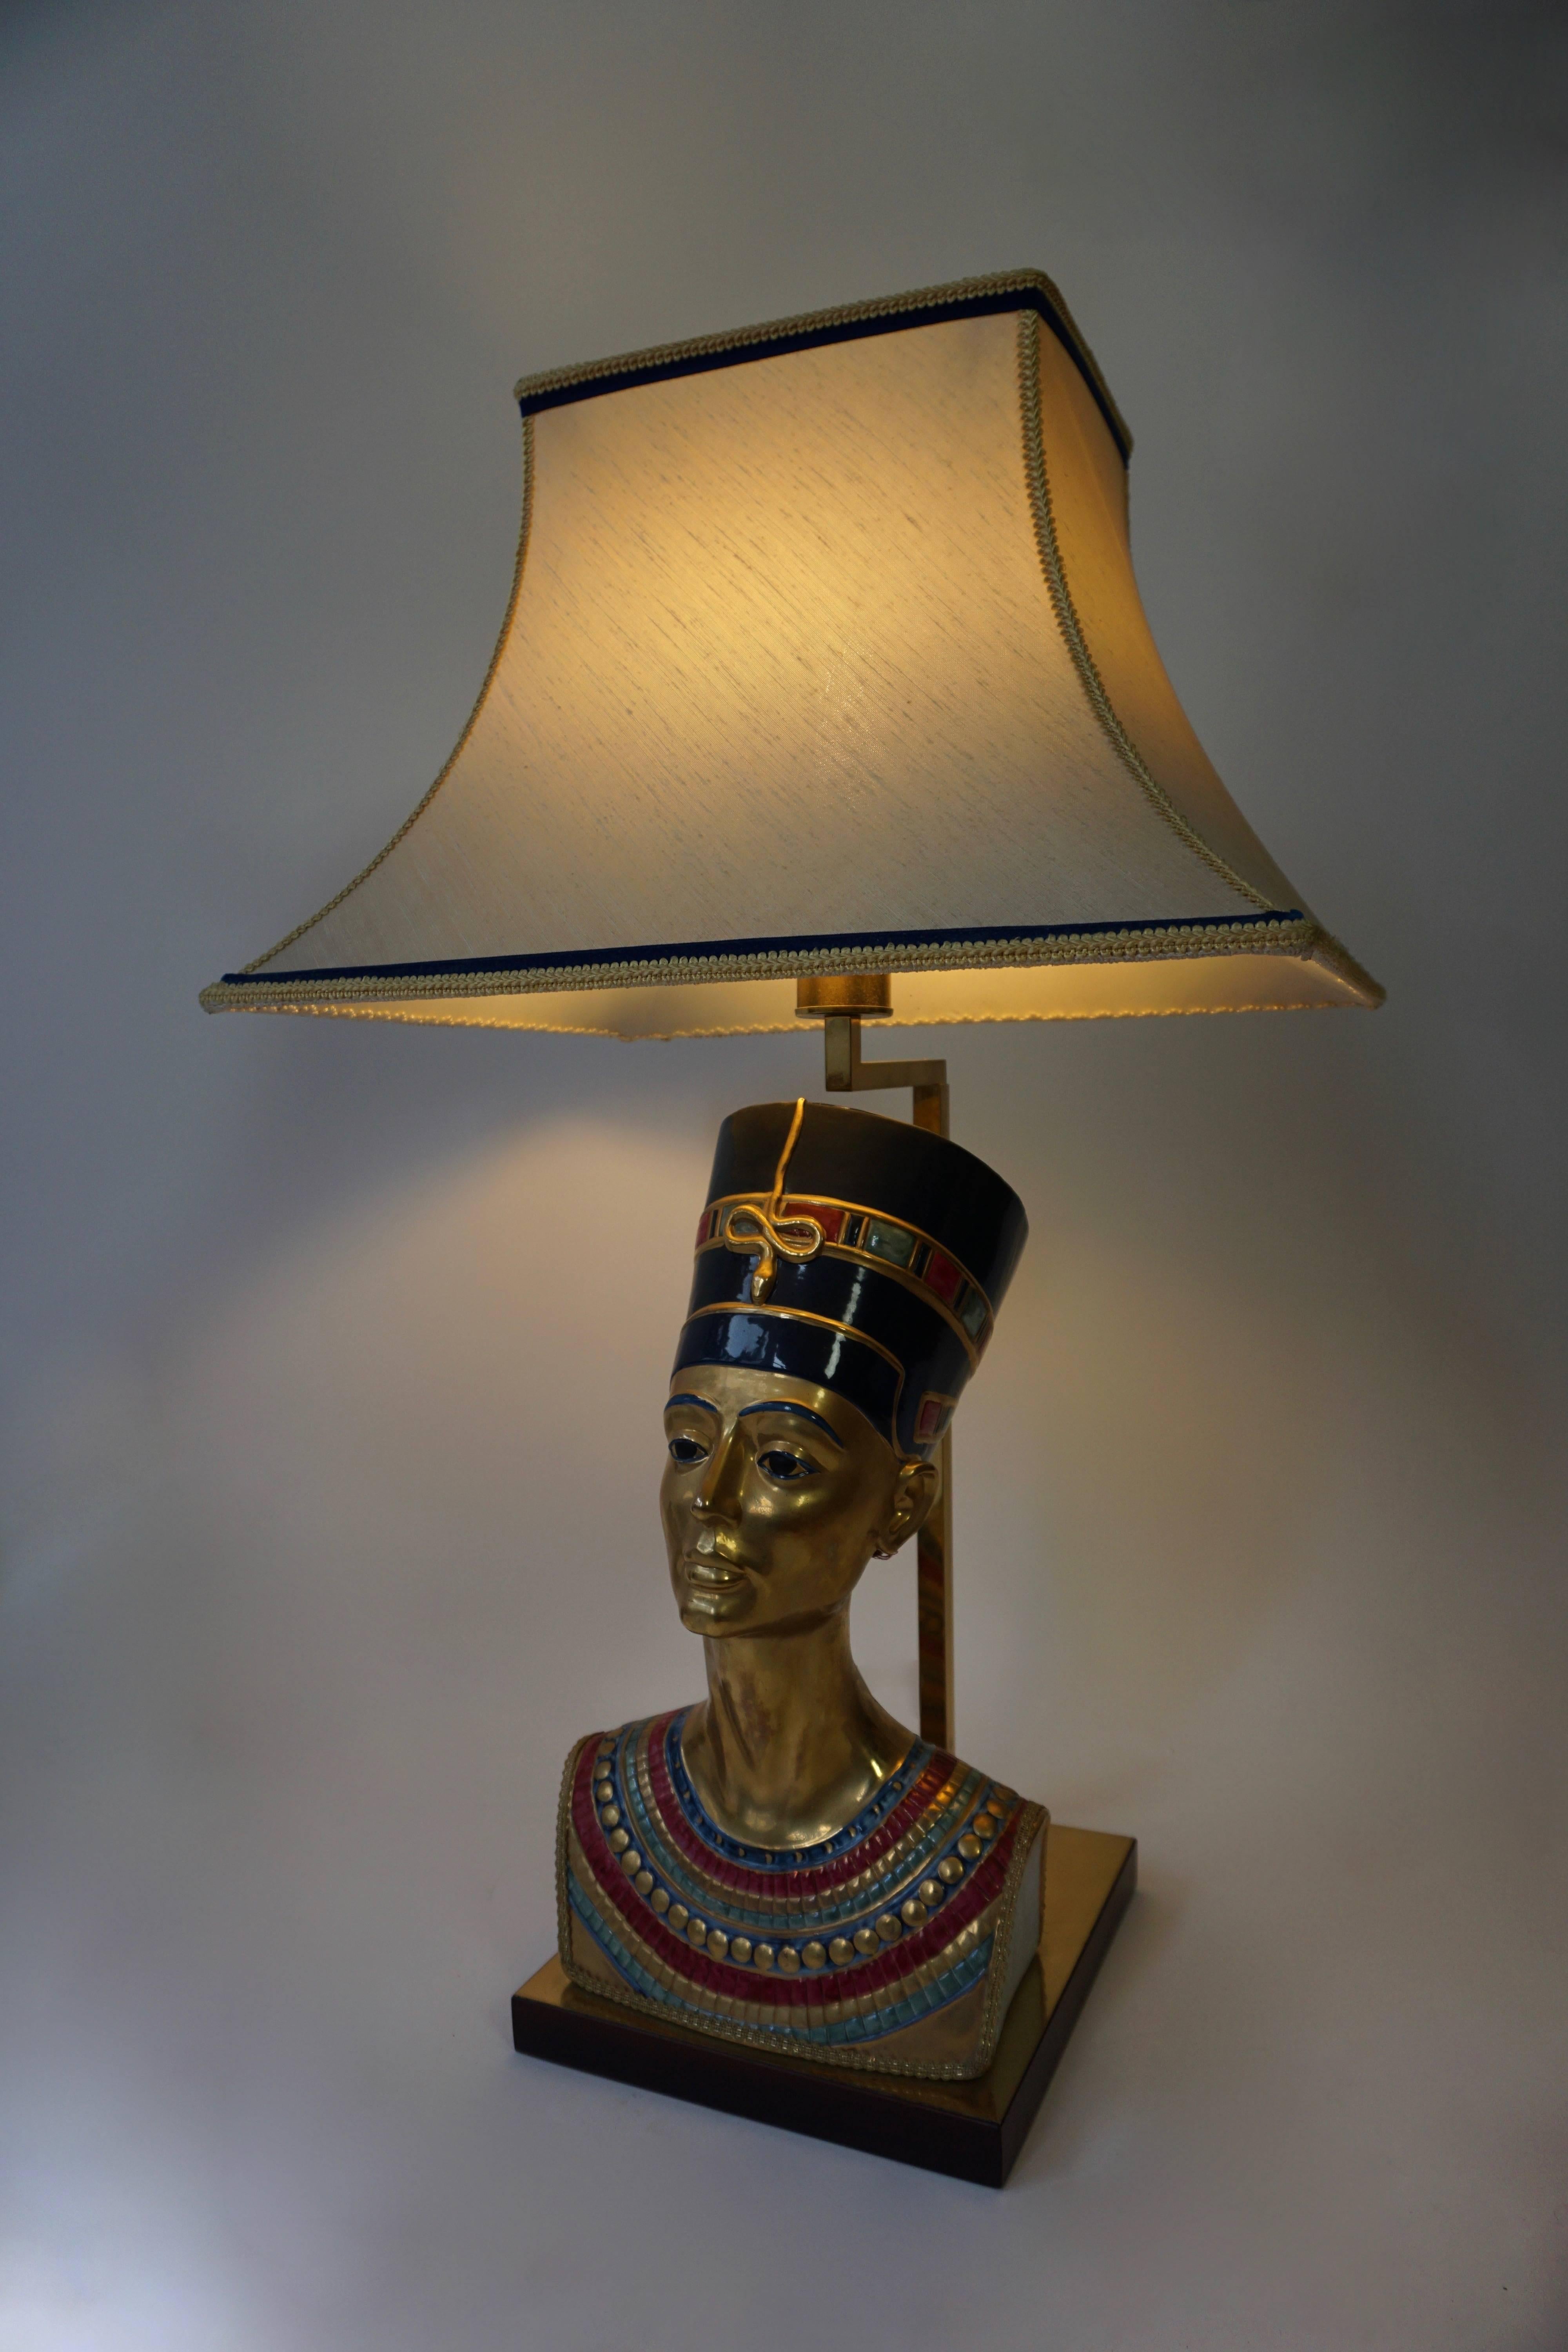 Wunderschöne Tischlampen aus italienischem Porzellan mit der Darstellung der ägyptischen Königin Nofretete. Erstaunlich detaillierte gemeißelt Funktionen, Juwelen und Kopfstück, wunderbare Patina.
Unterzeichnet Edoardo Tasca.
Höhe: 86